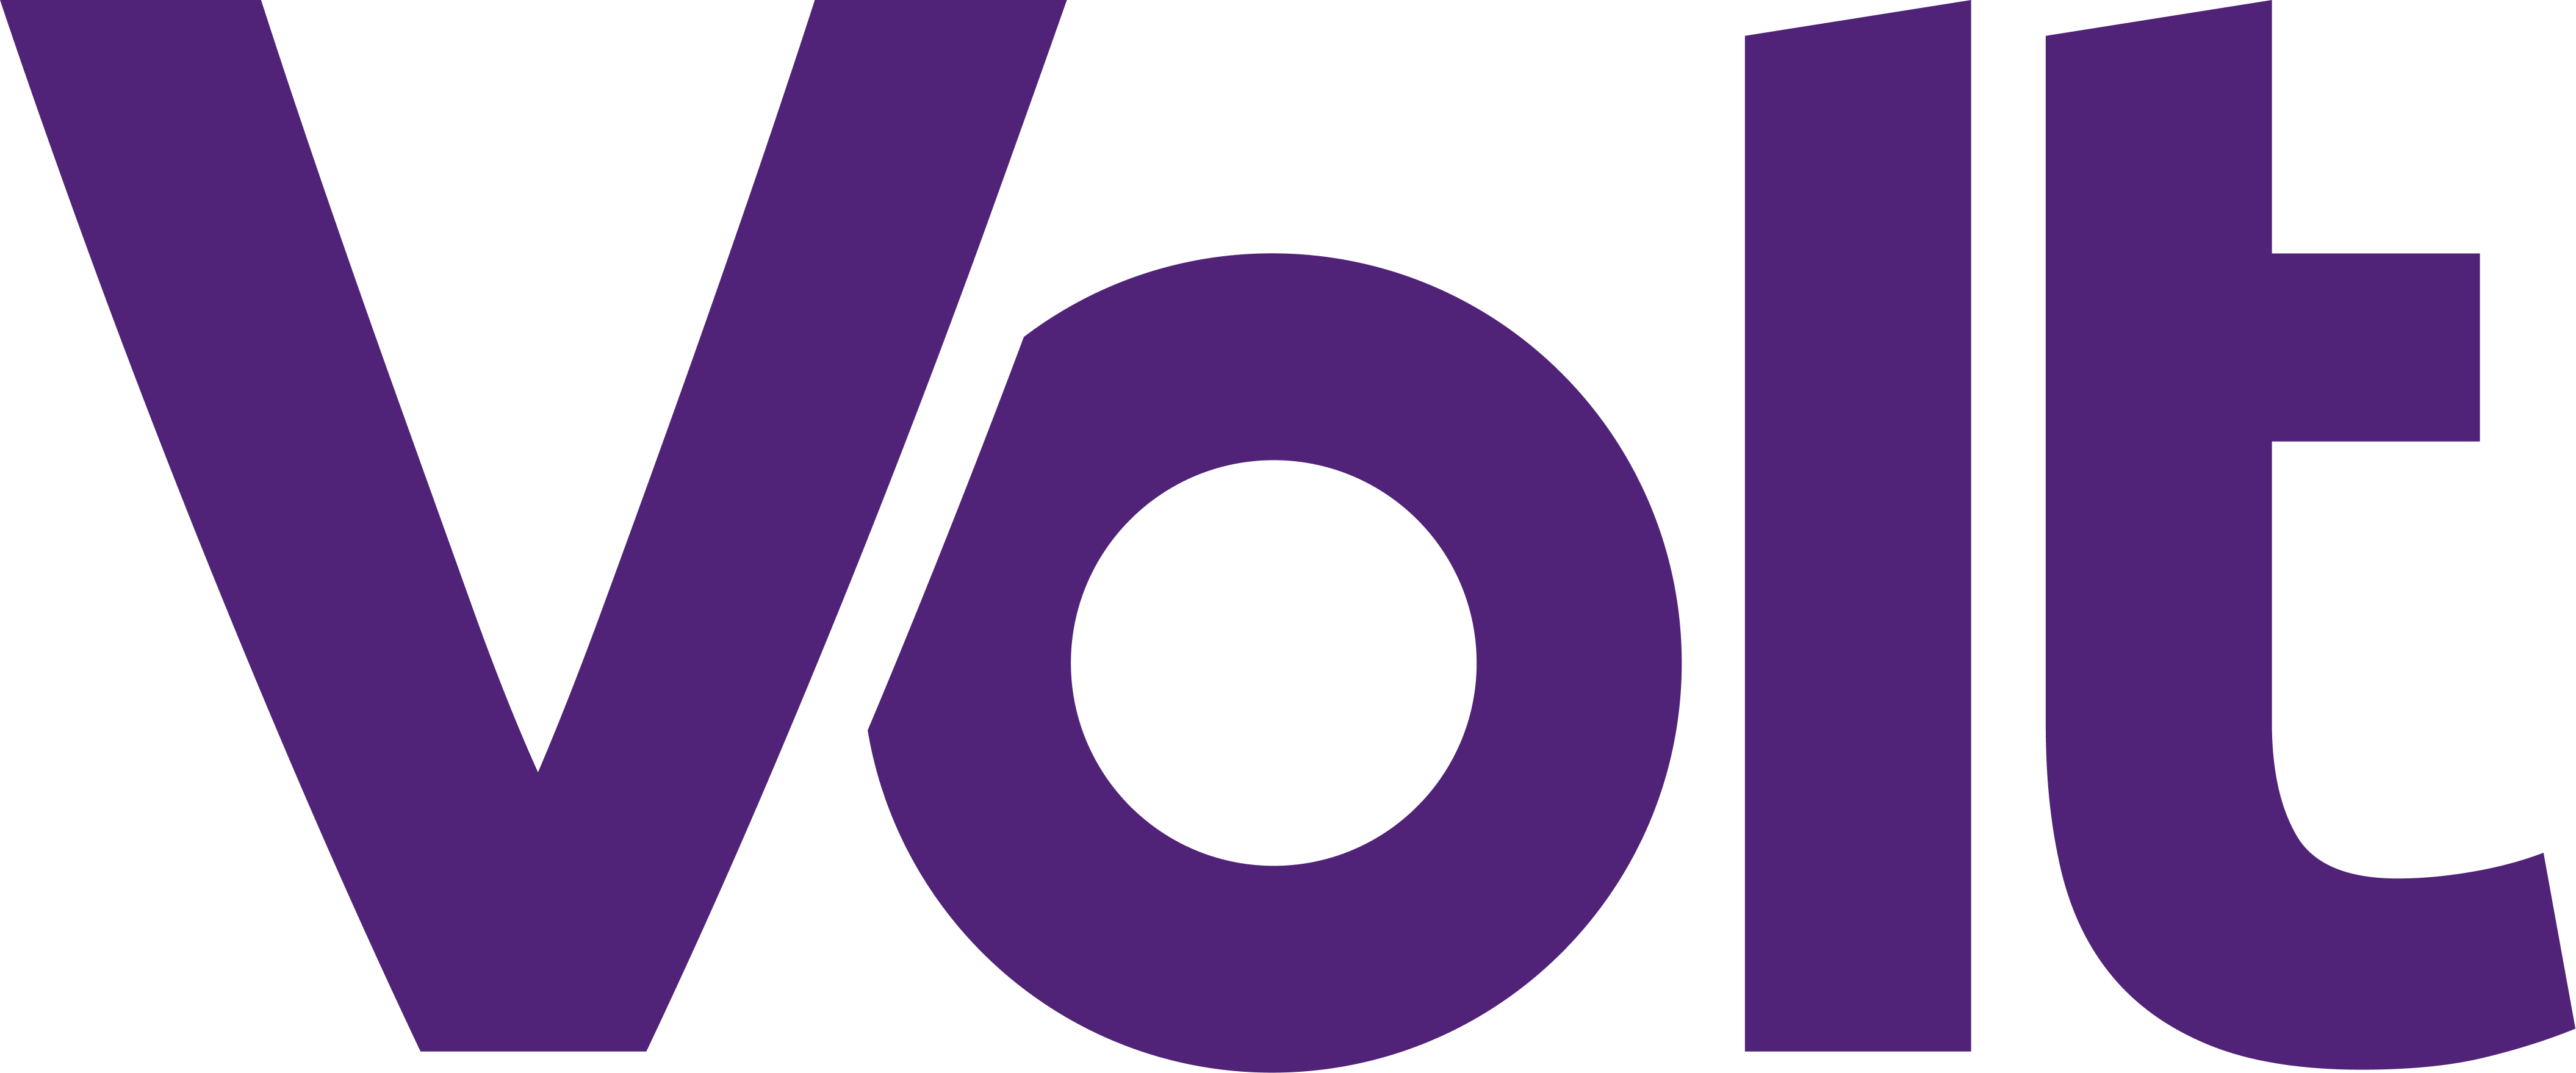 Volt's GA